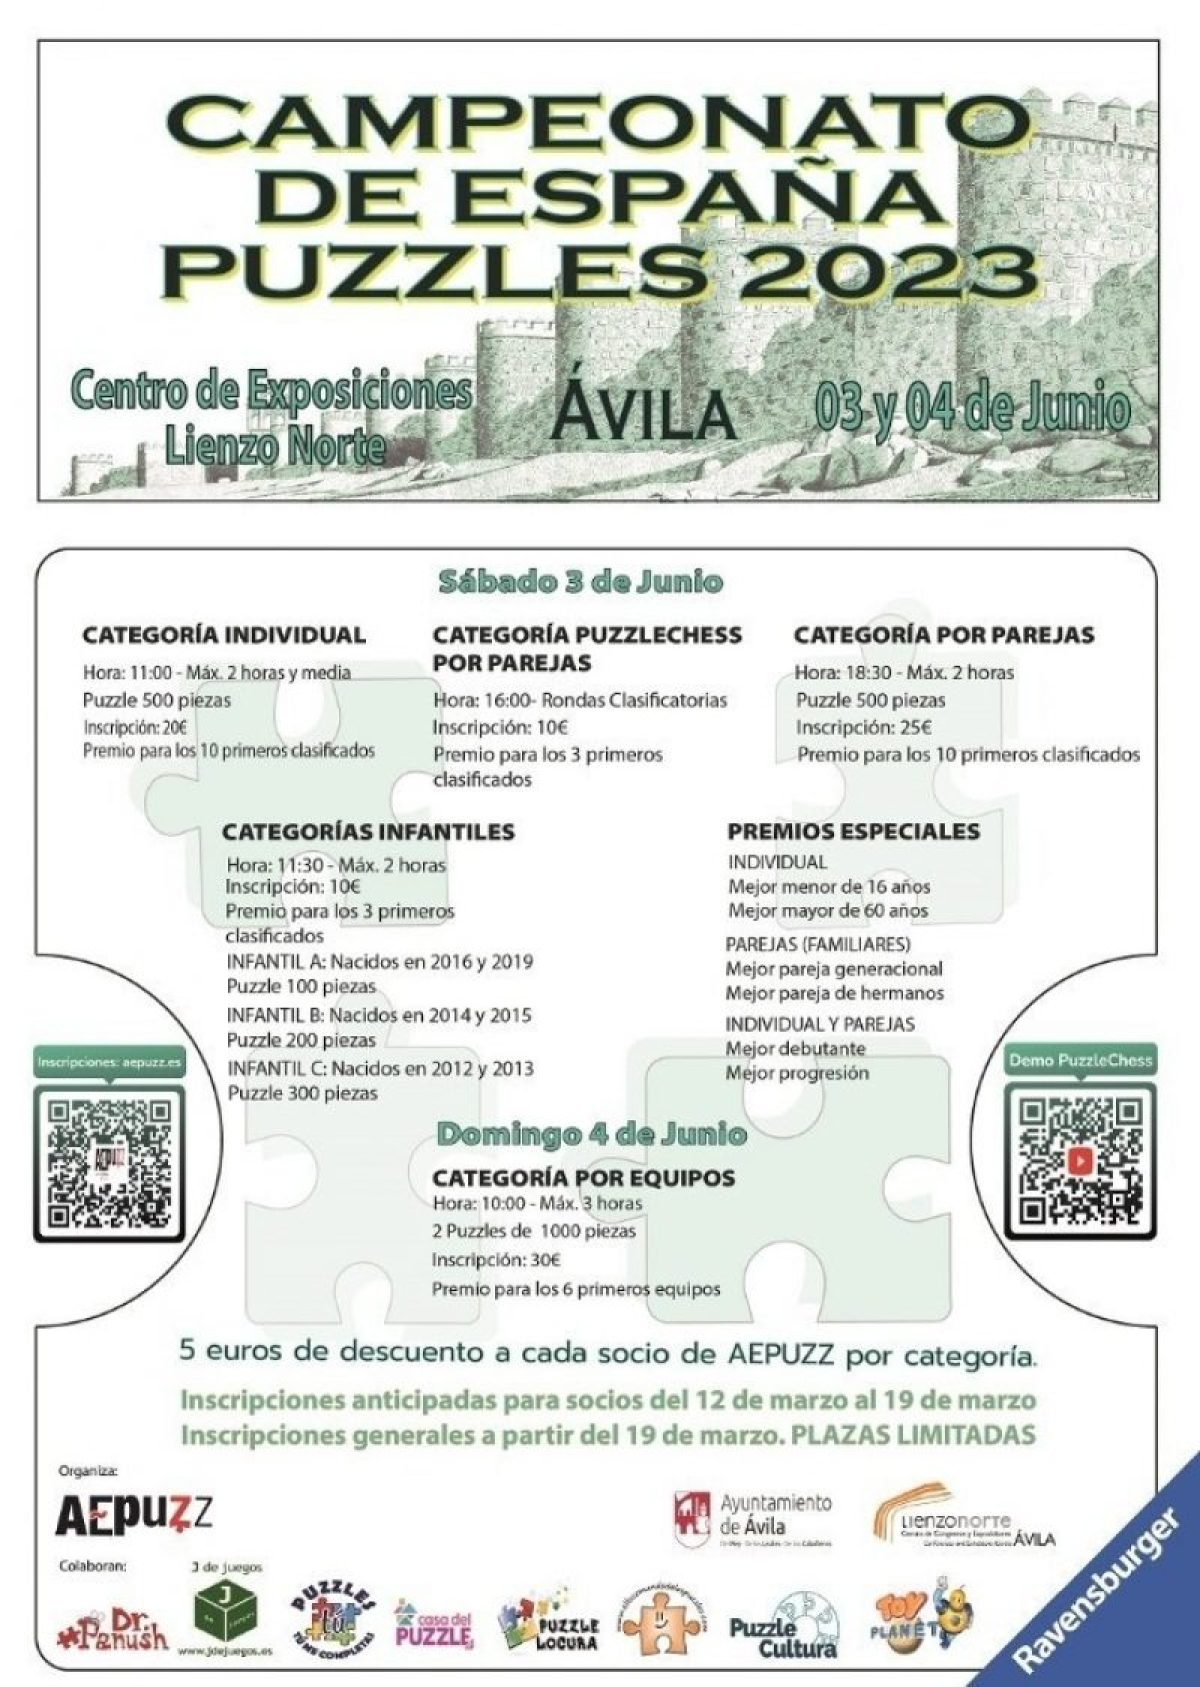 Campeonato de España Puzzles 2023